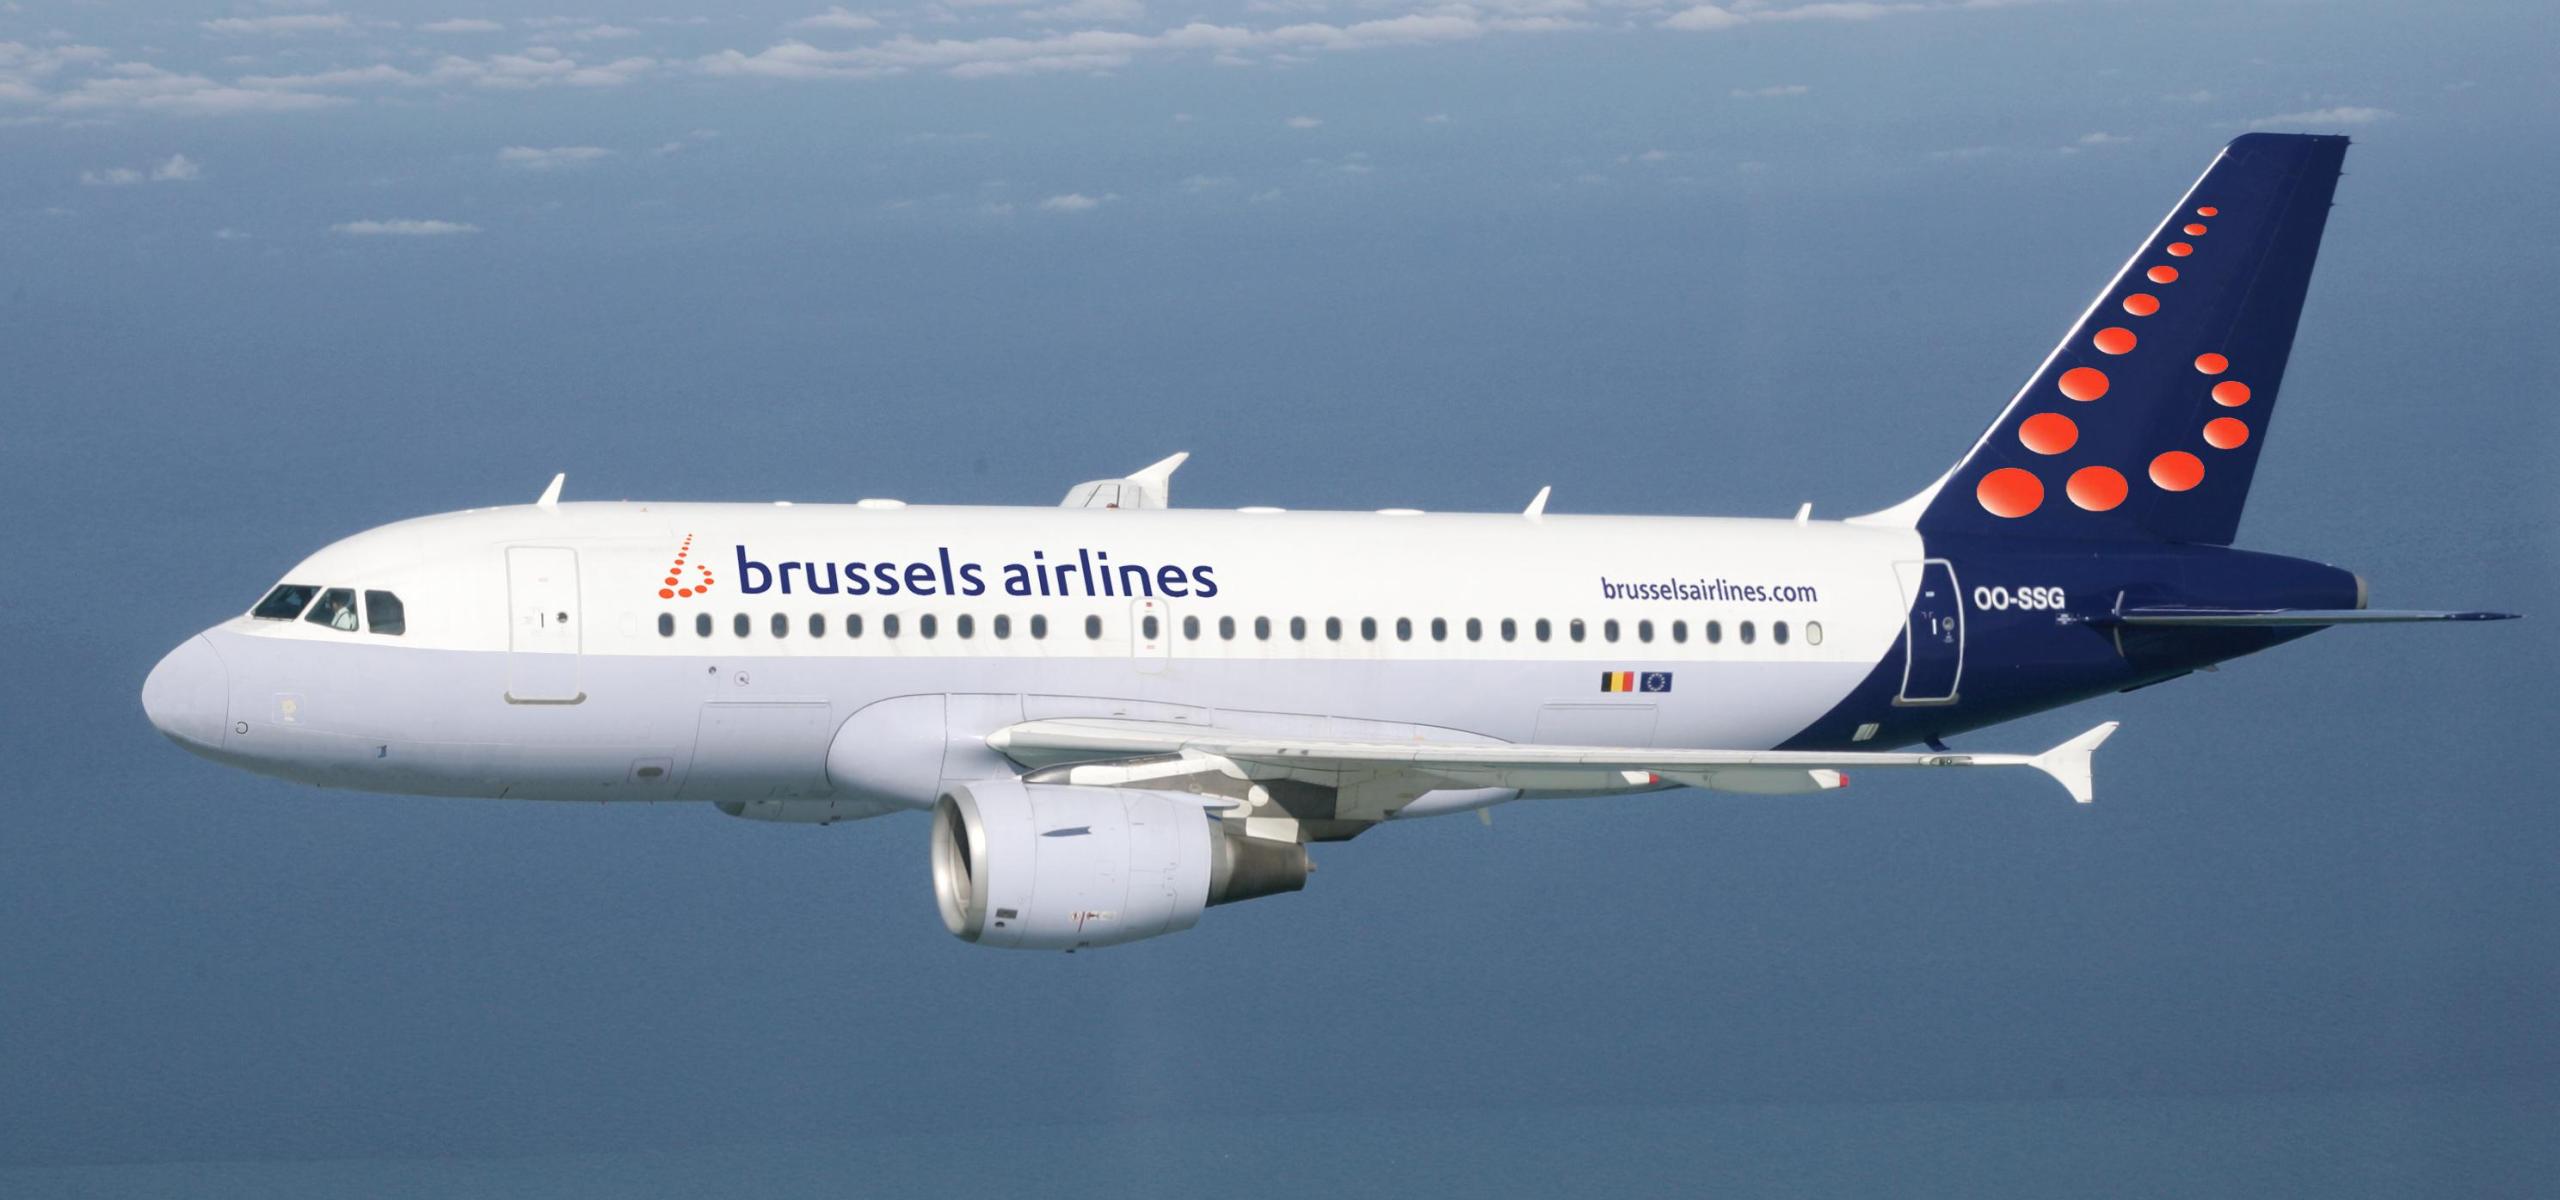 Απεργούν οι πιλότοι της Brussels Airlines διεκδικώντας αύξηση μισθού – Ακυρώθηκαν τα 3/4 των πτήσεων